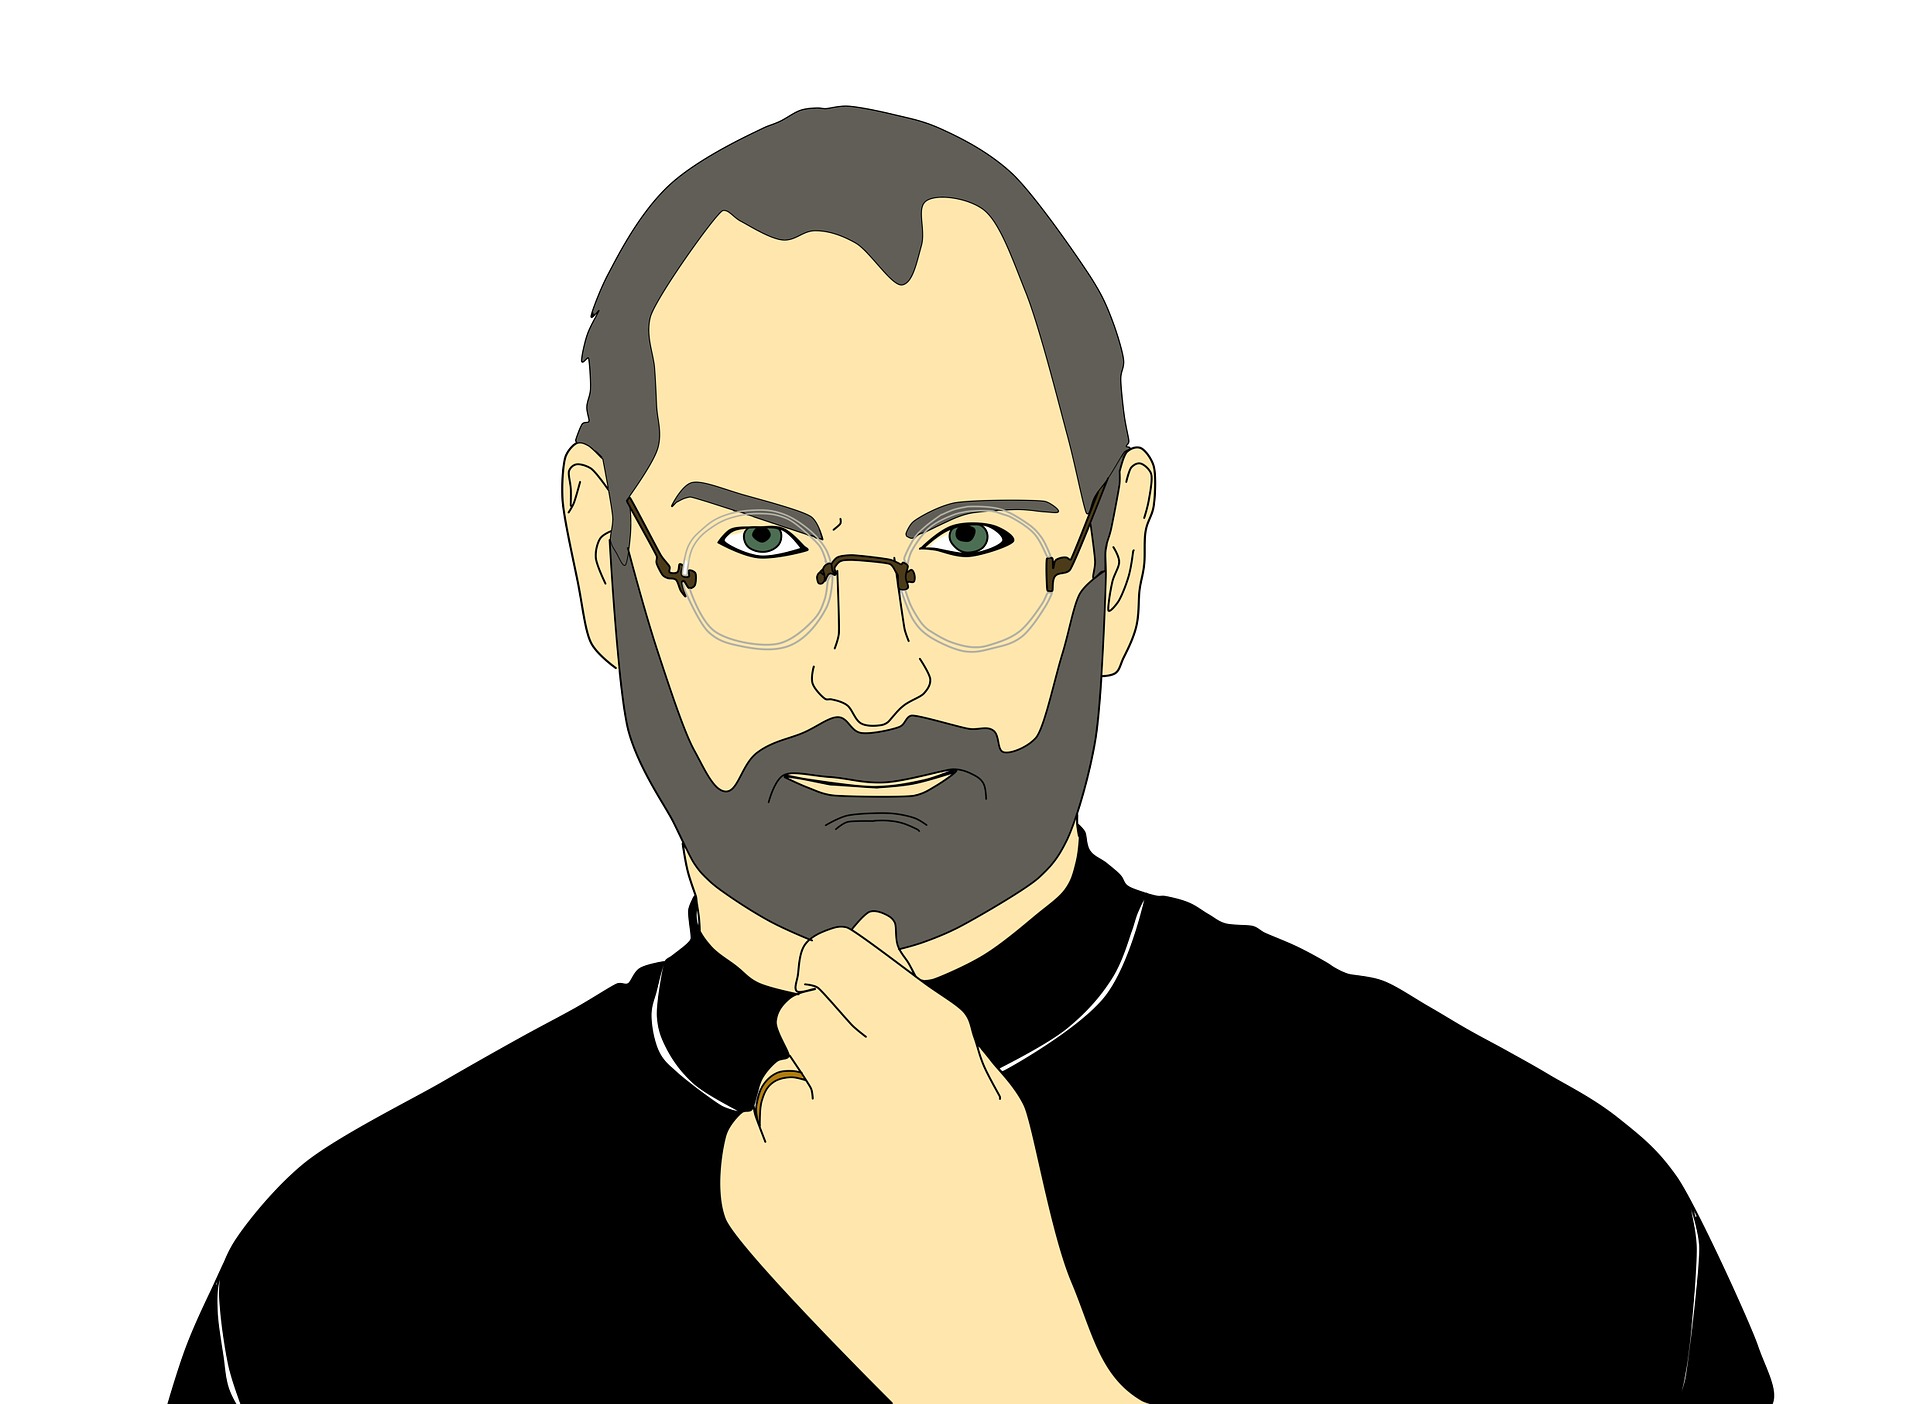 Steve Jobs Film 2013